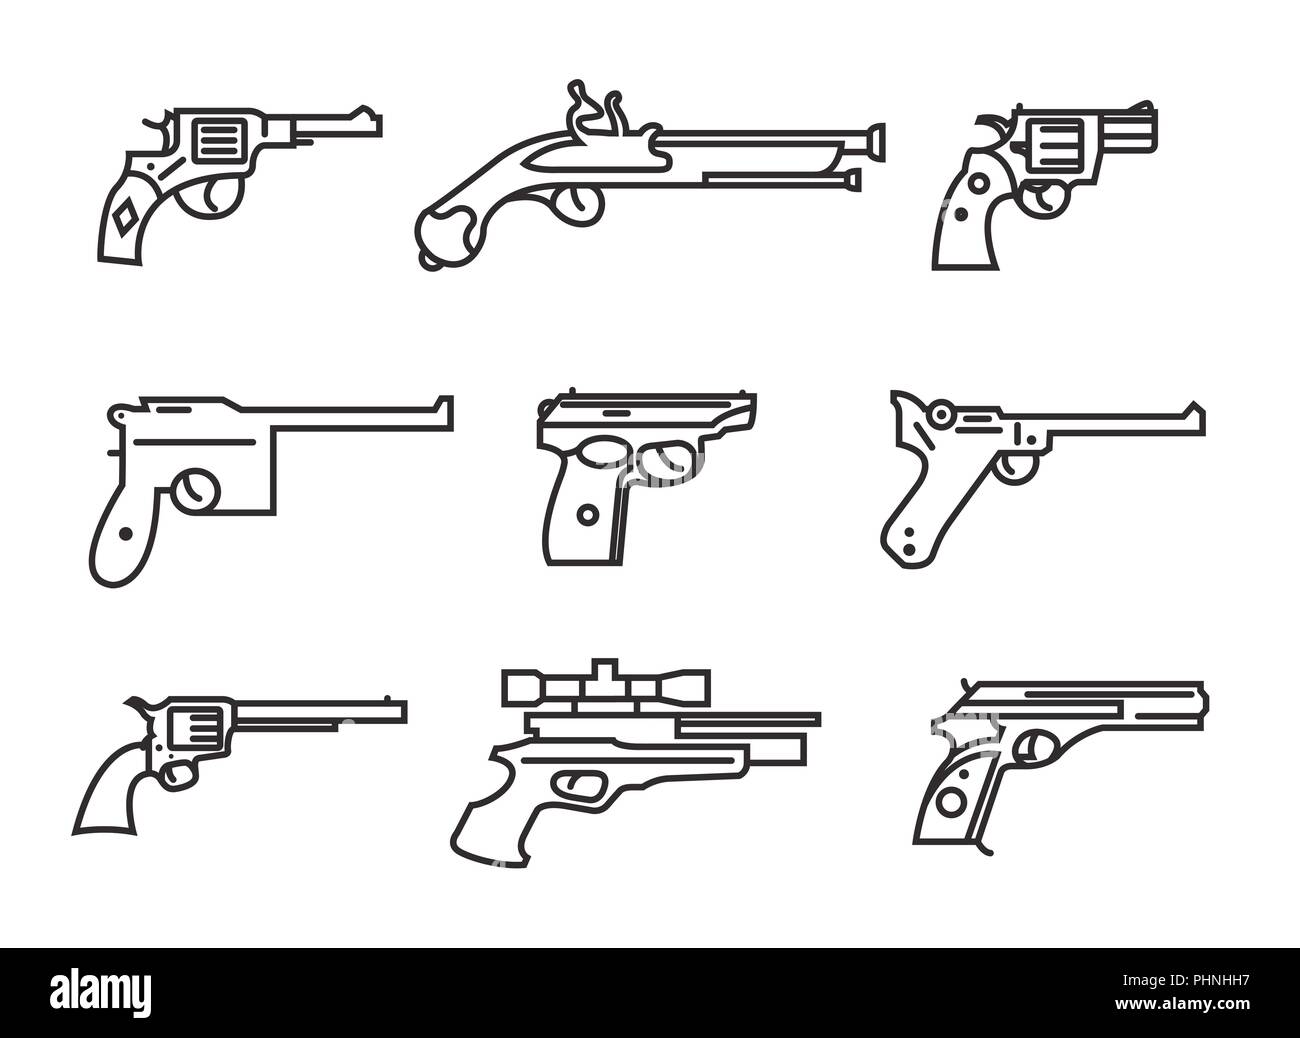 Feuerwaffe eingestellt. Gewehre, Pistolen, Revolver. Flache Bauform. Umrisse lineare Version. Vector Illustration Stock Vektor